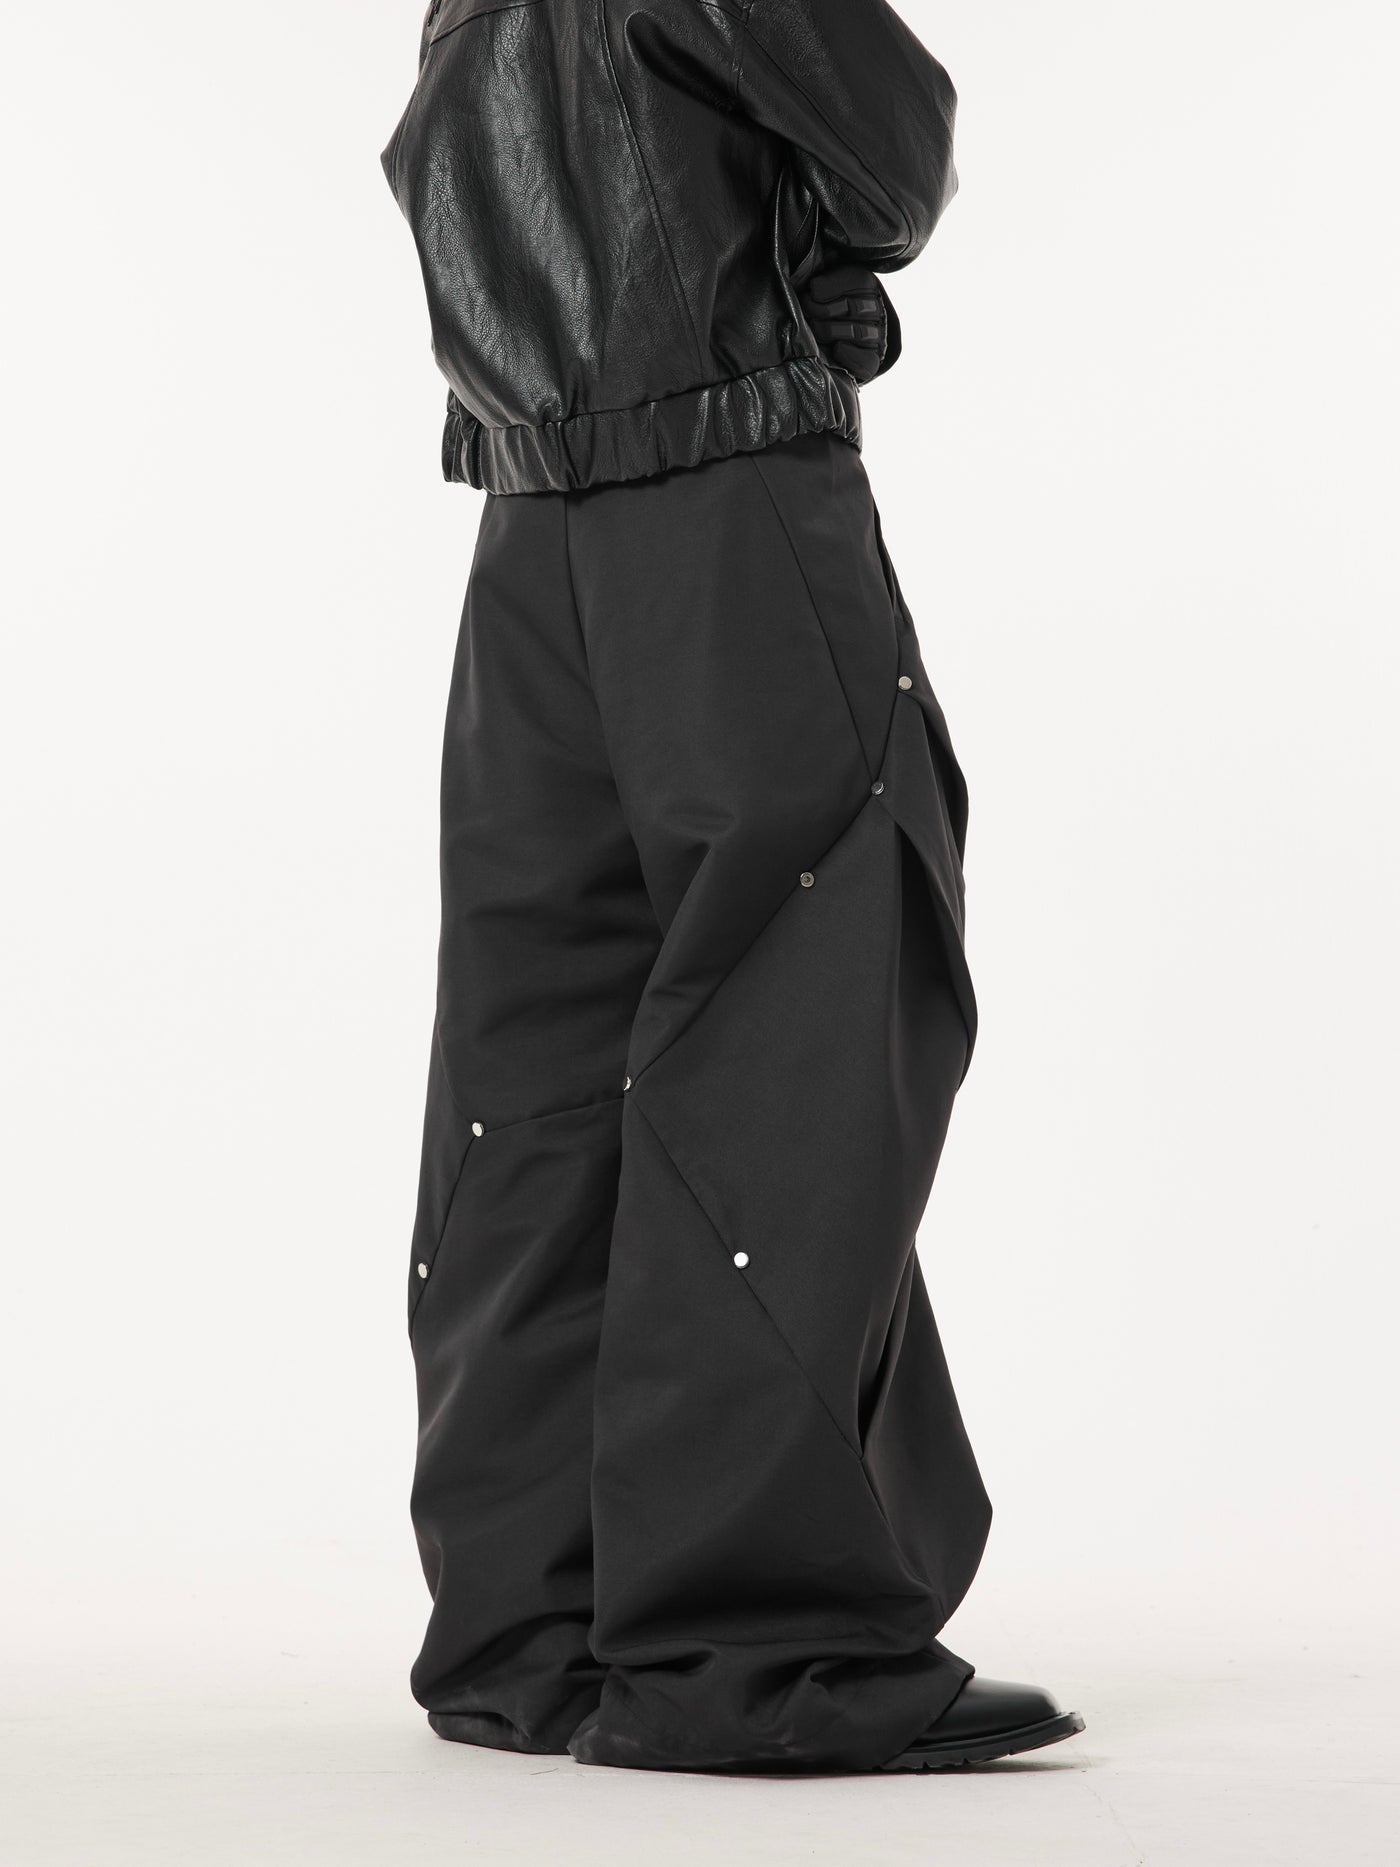 [DARKFOG] Hyper wide silhouette baggy pants DF0020